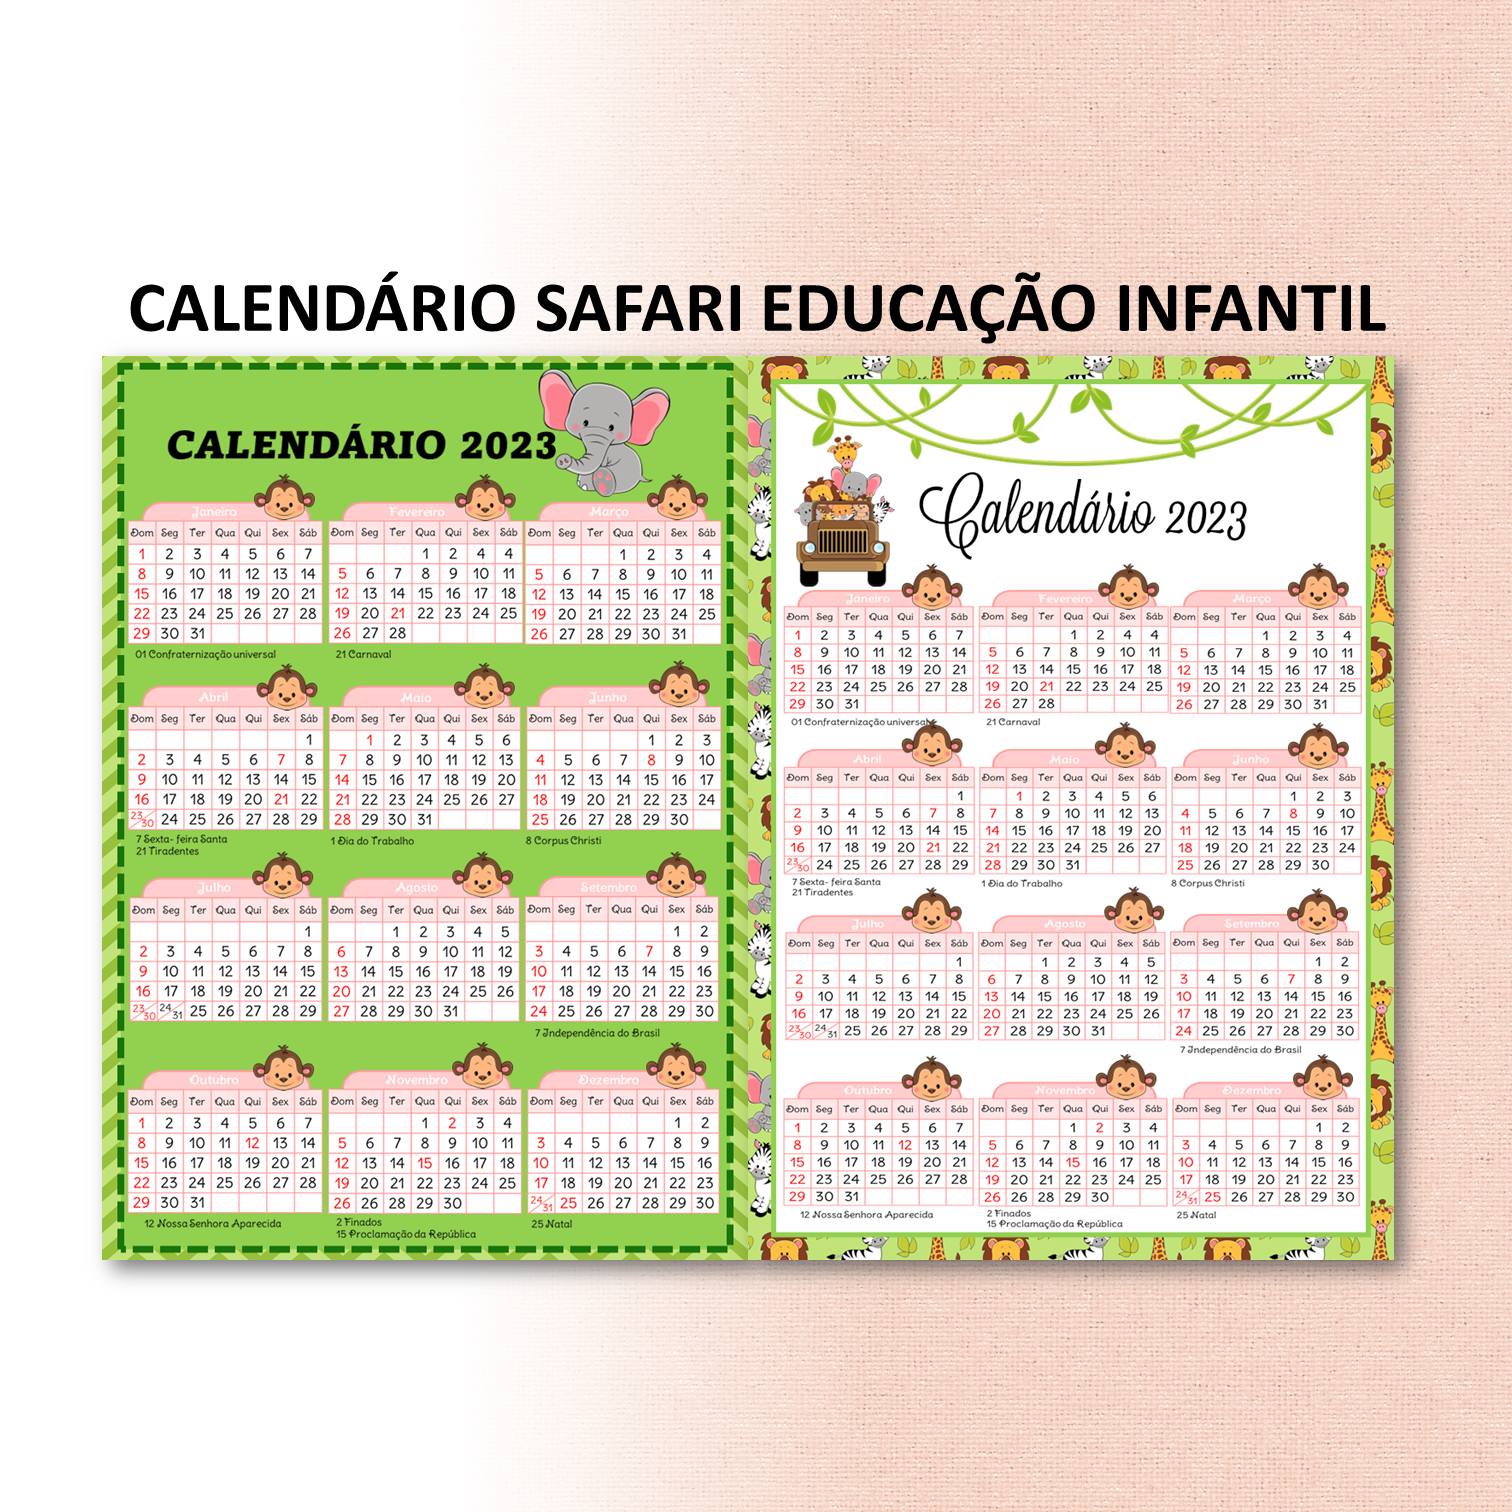 Calendário safari educação infantil